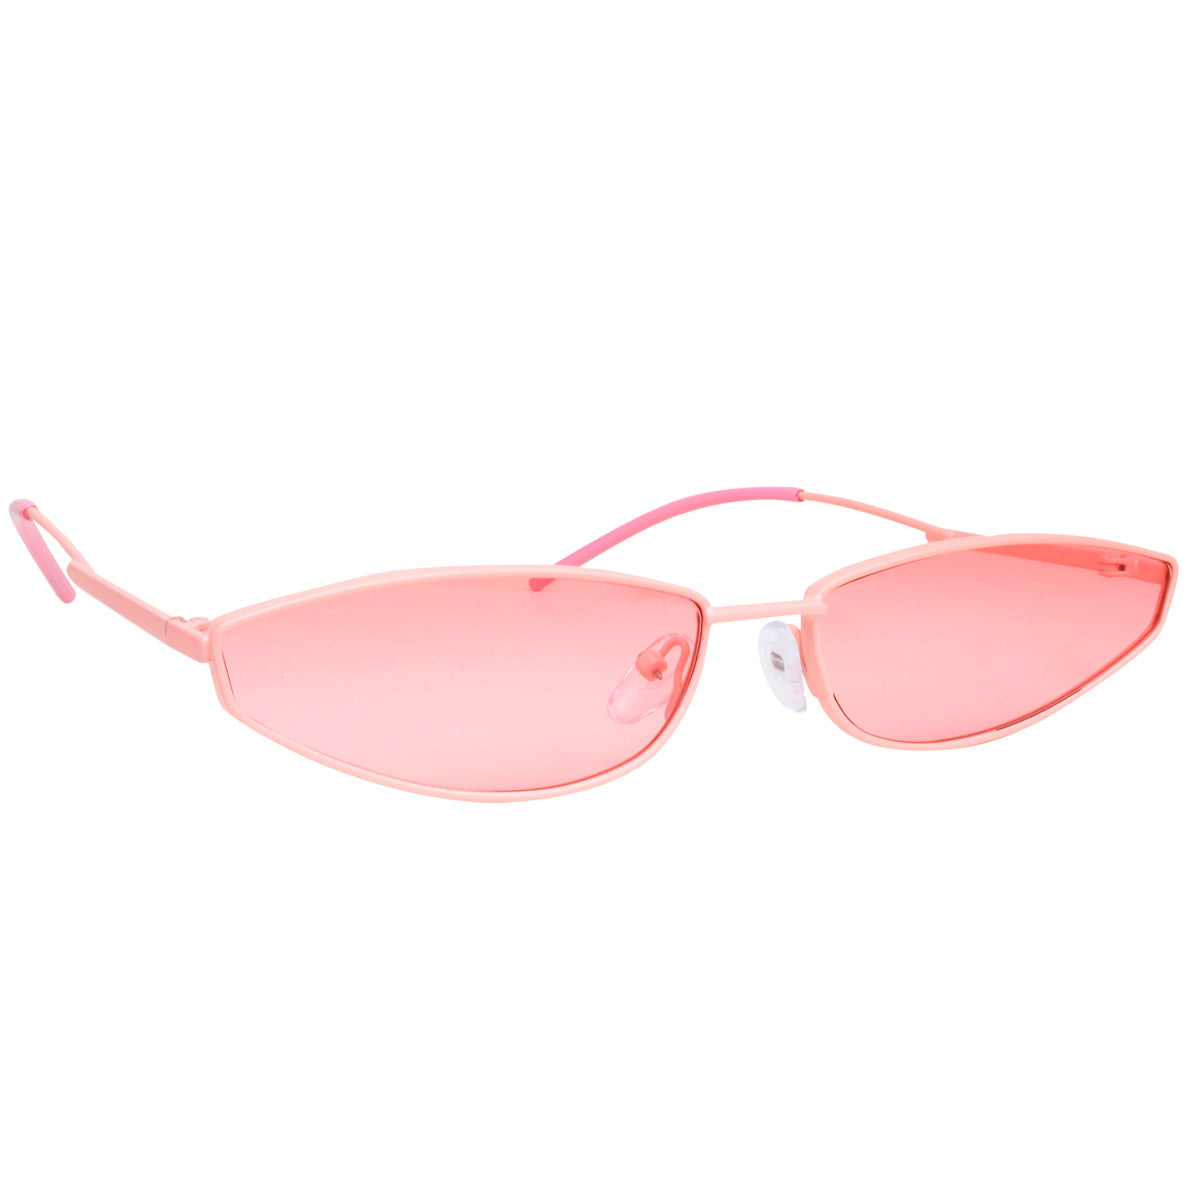 Minimalist virgin sunglasses